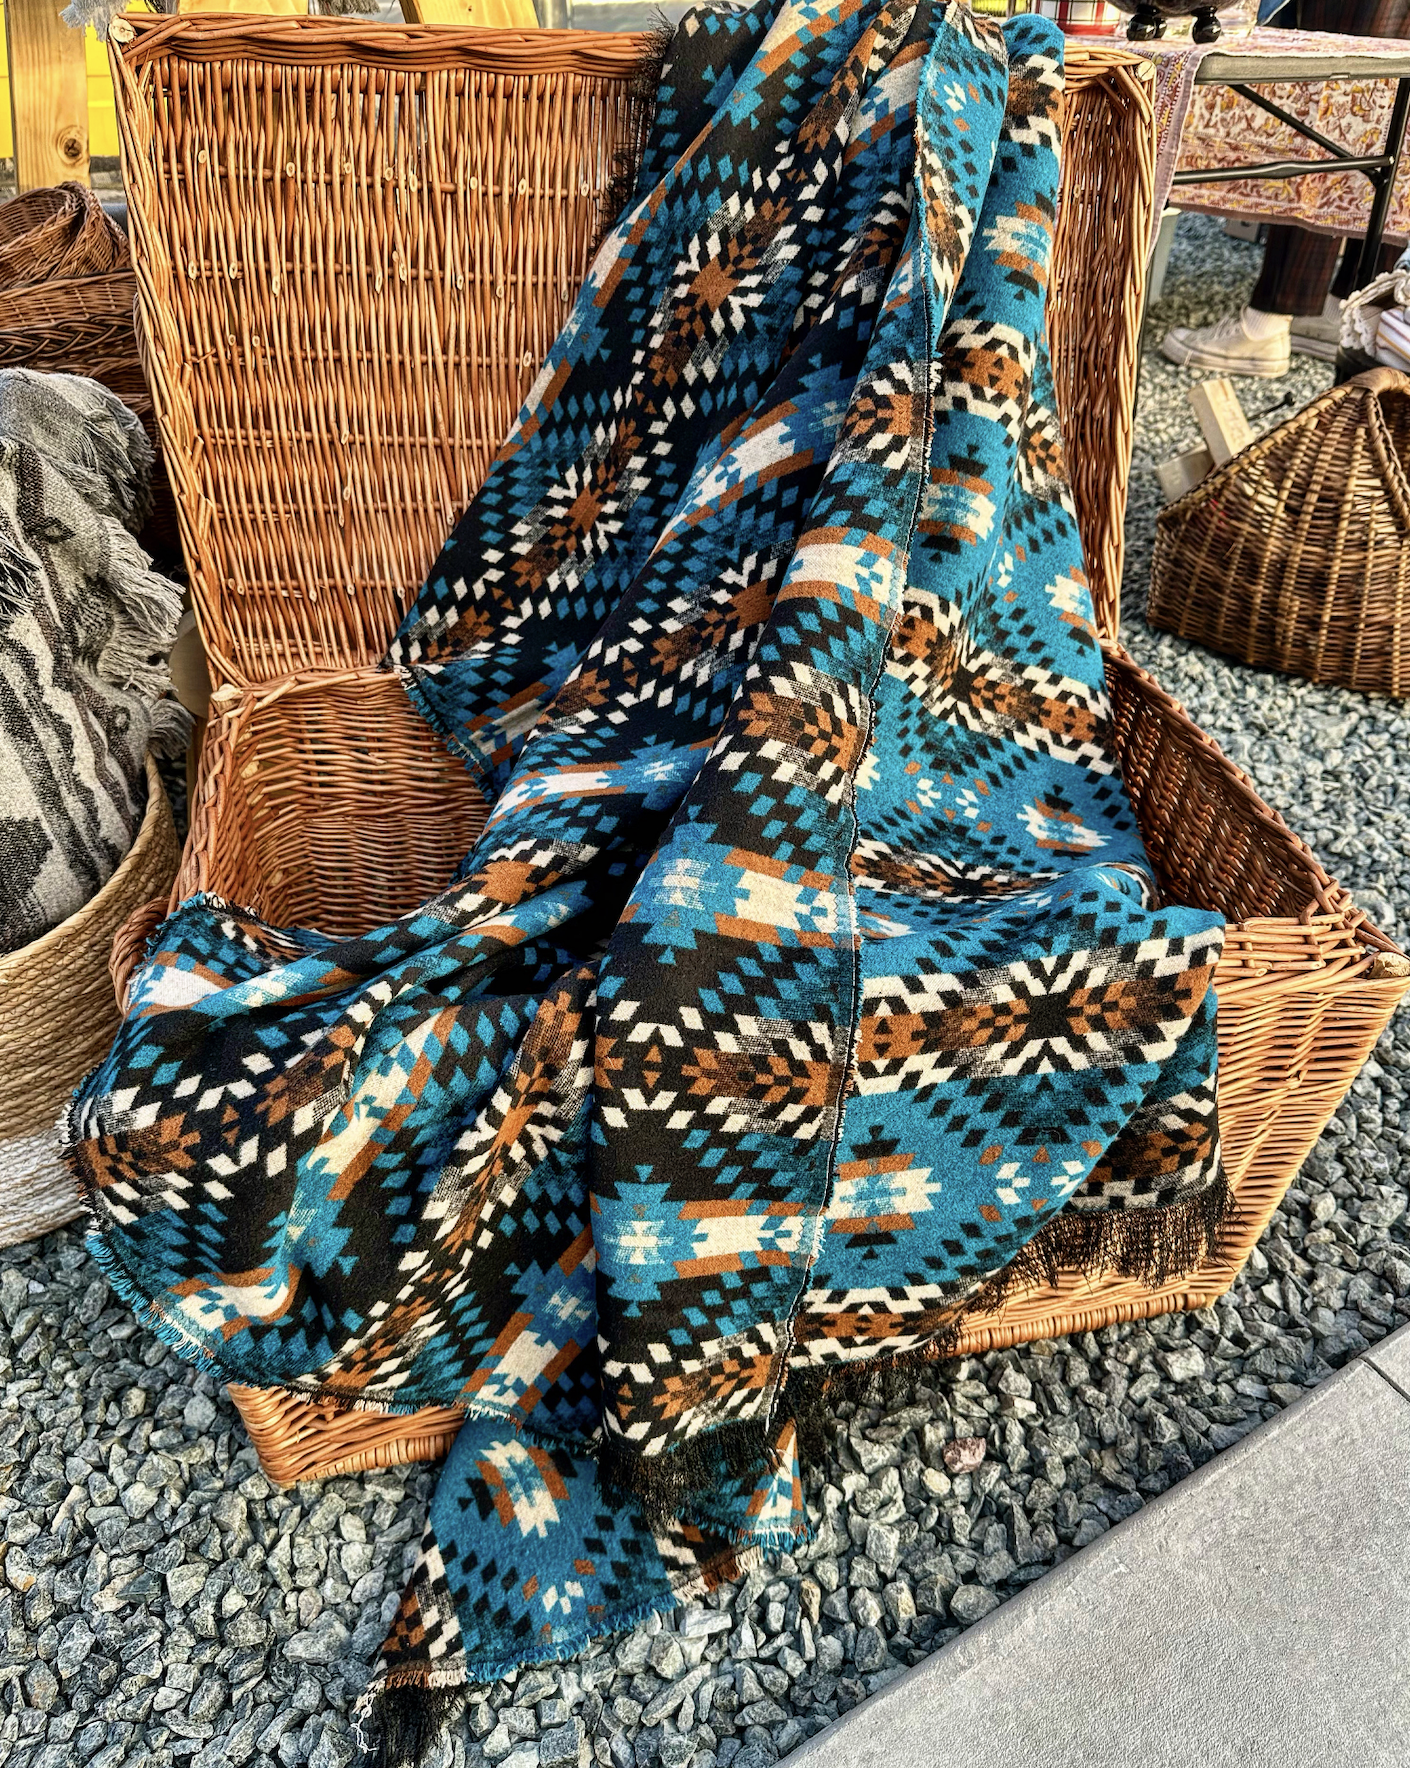 west coast alchemist handmade blankets baskets in abbotsford fraser valley british columbia canada 8